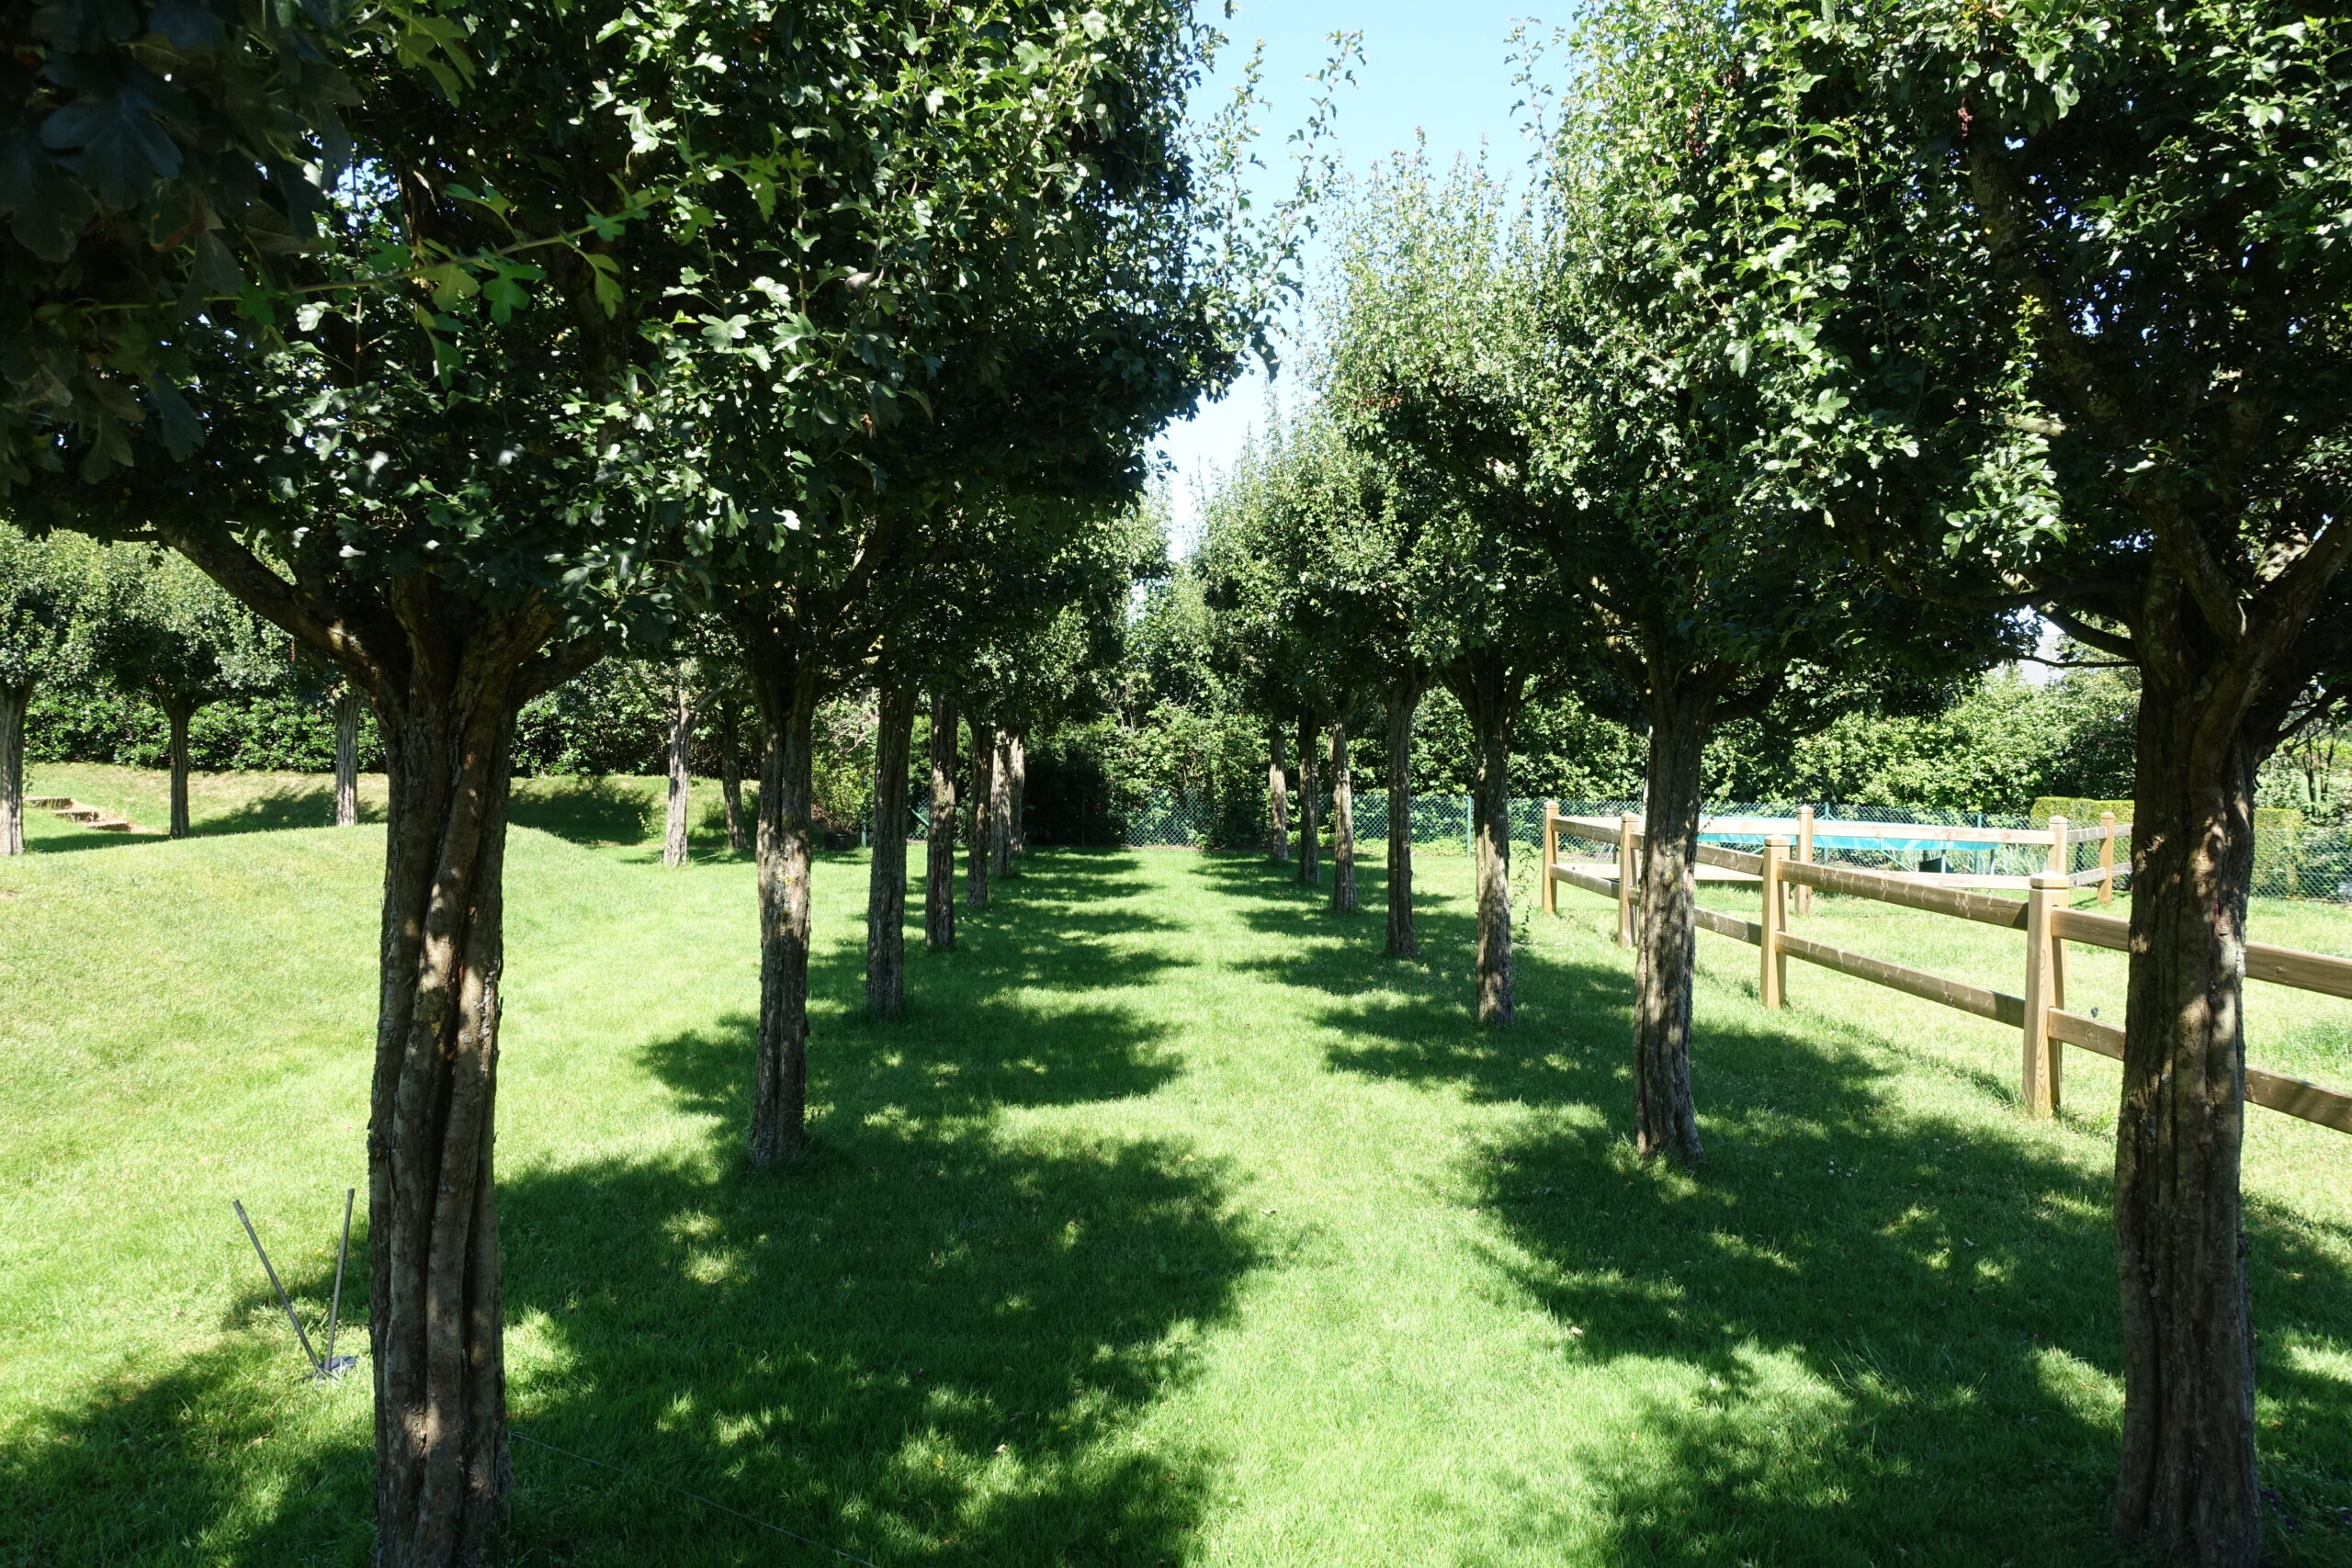 Bomenrij in vrije tuin met gazon en hekwerk. Glooiend gazon met talud